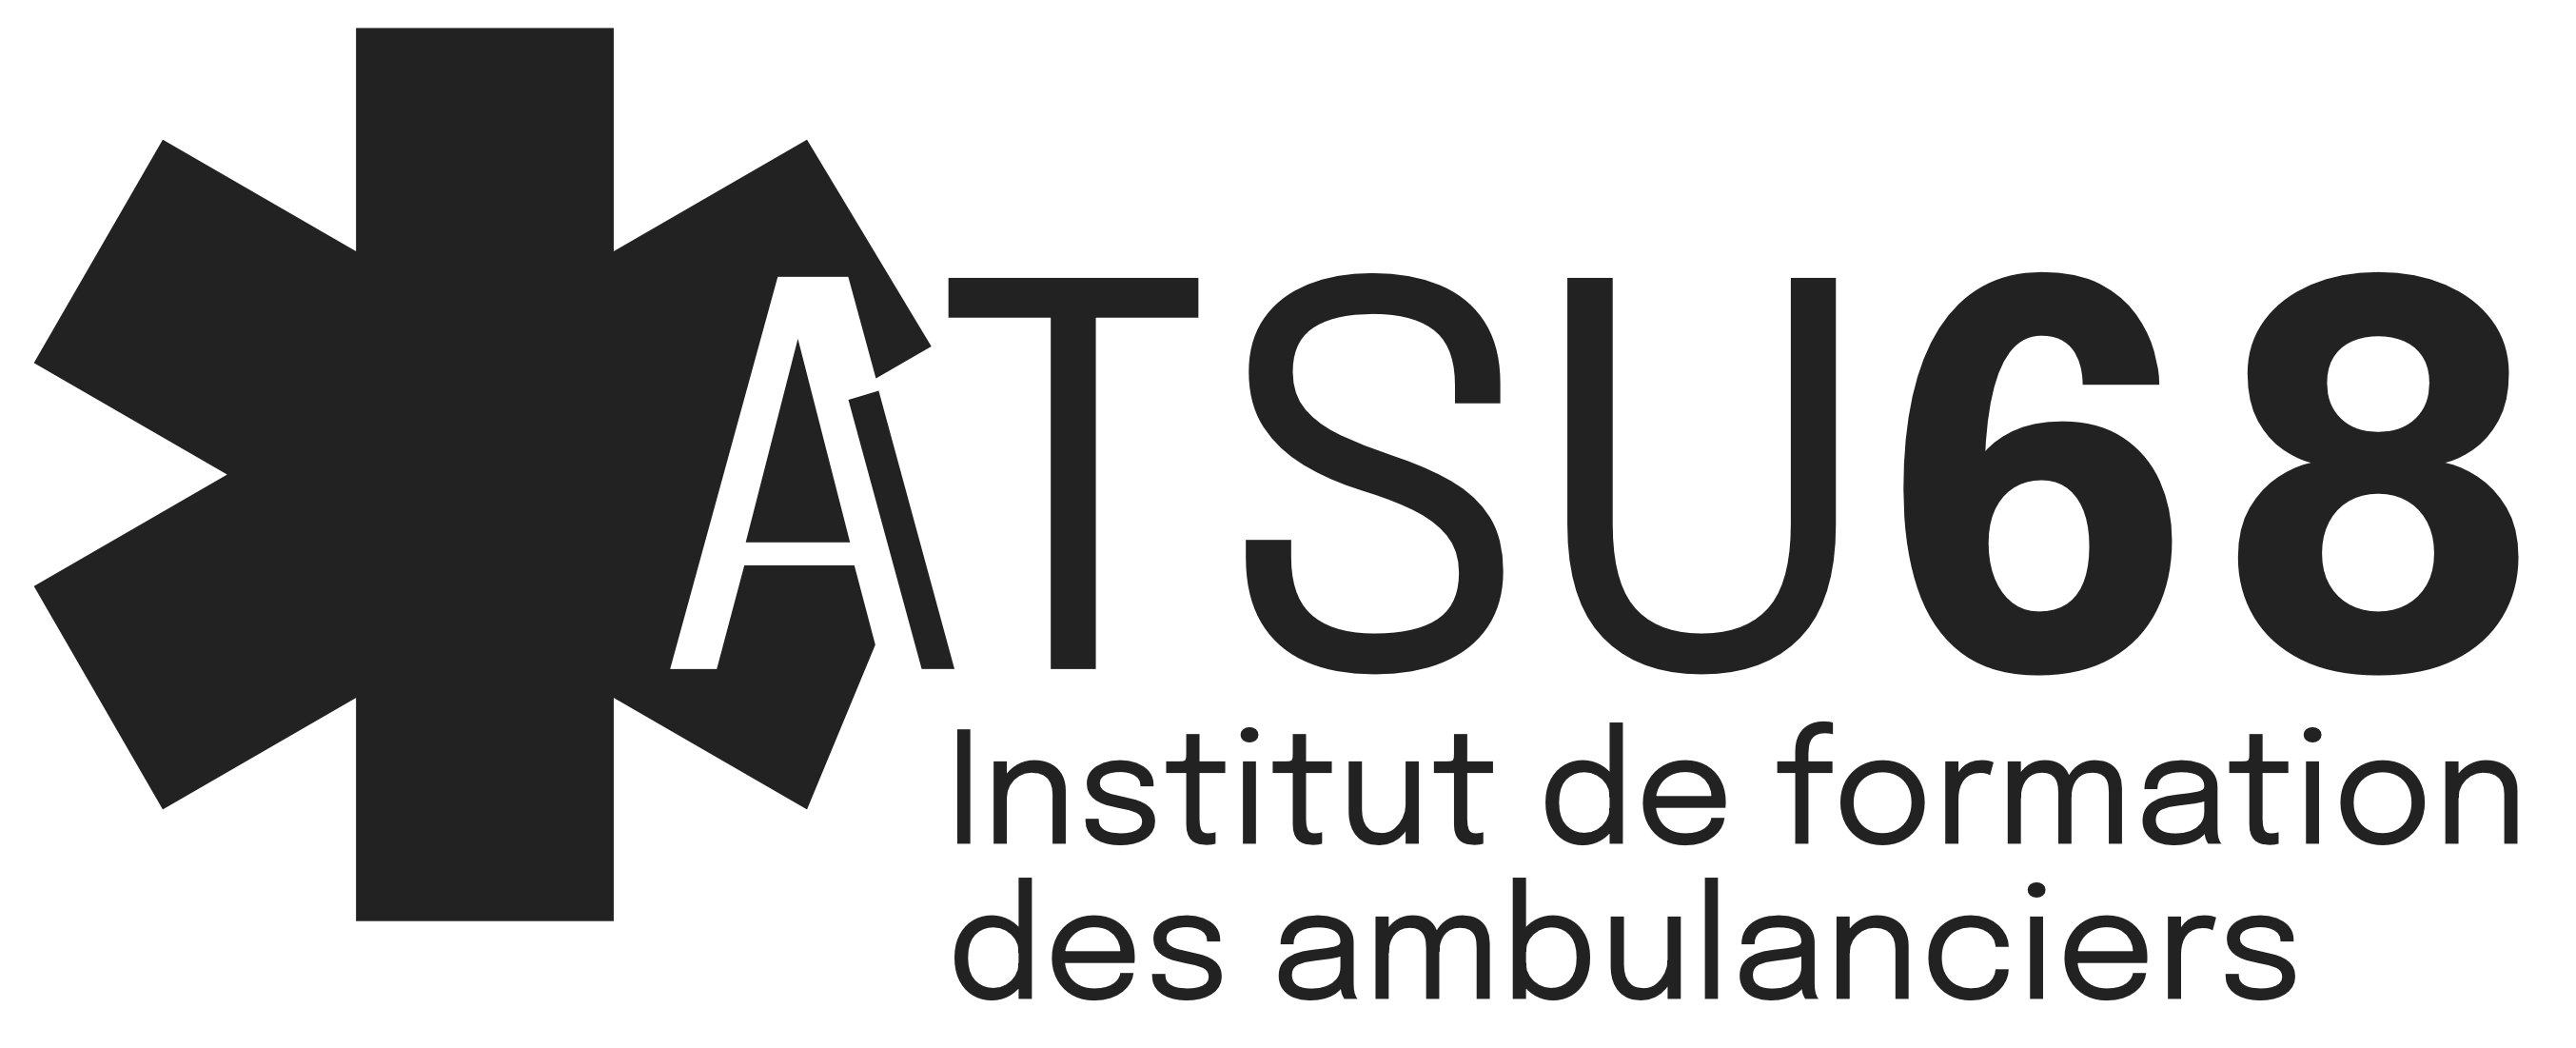 ATSU68, la formation des ambulanciers en Alsace